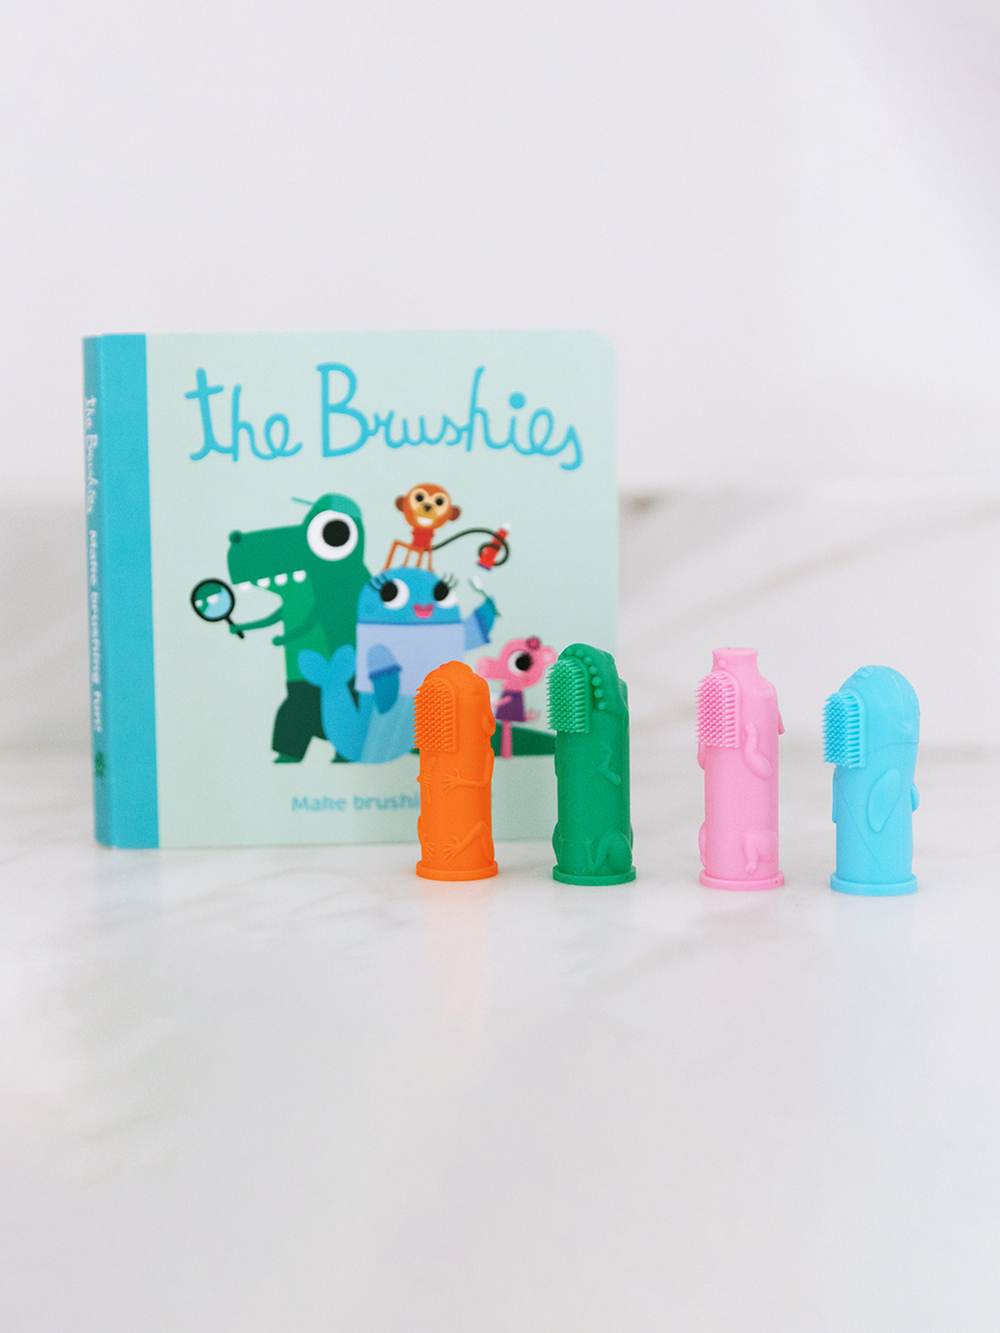 Набор Детская зубная щетка на пальчик The Brushies (0-4г) Чомпс и Книга со сказками